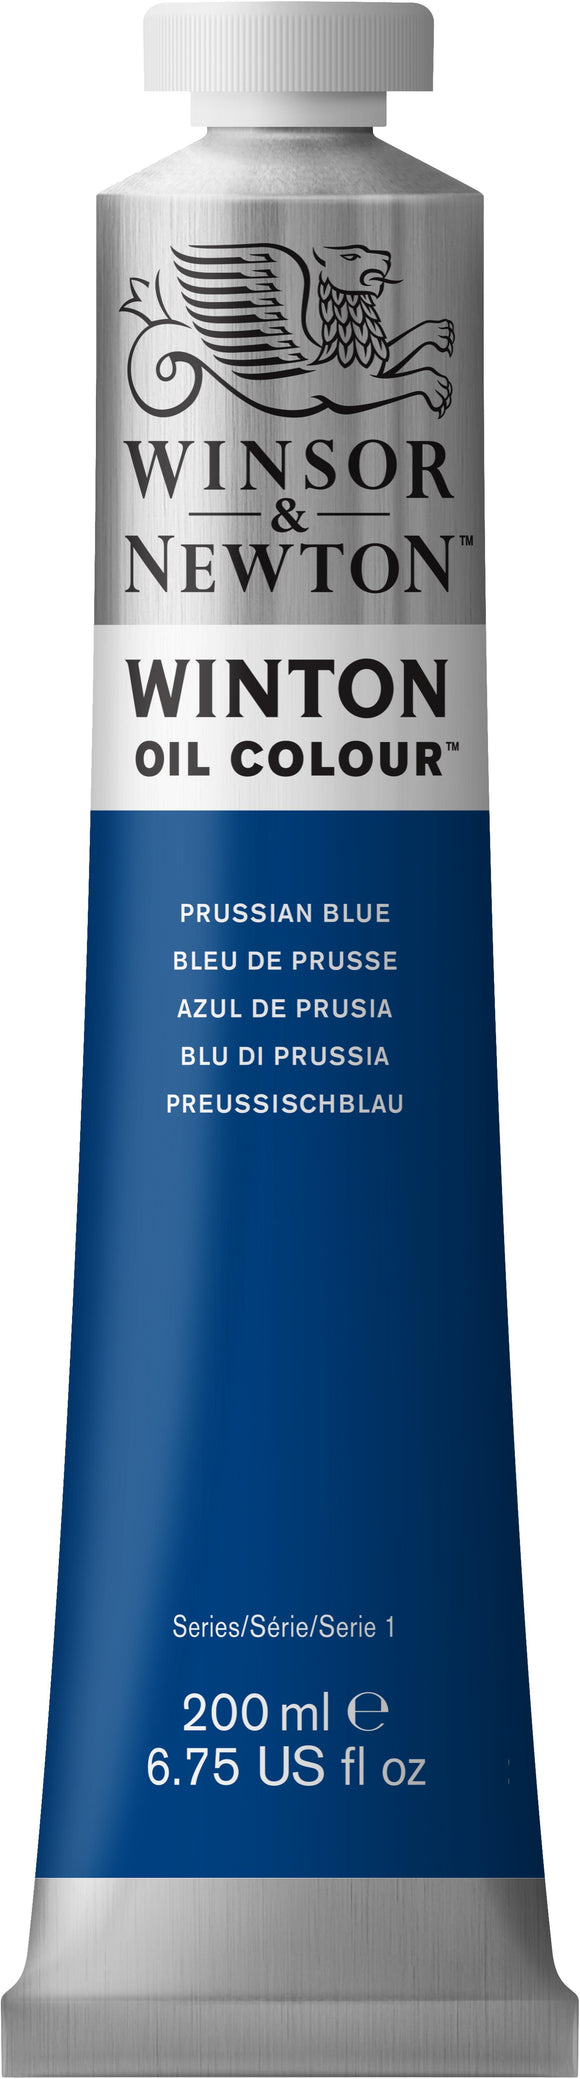 Winsor & Newton Winton Oil Color Prussian Blue 200Ml